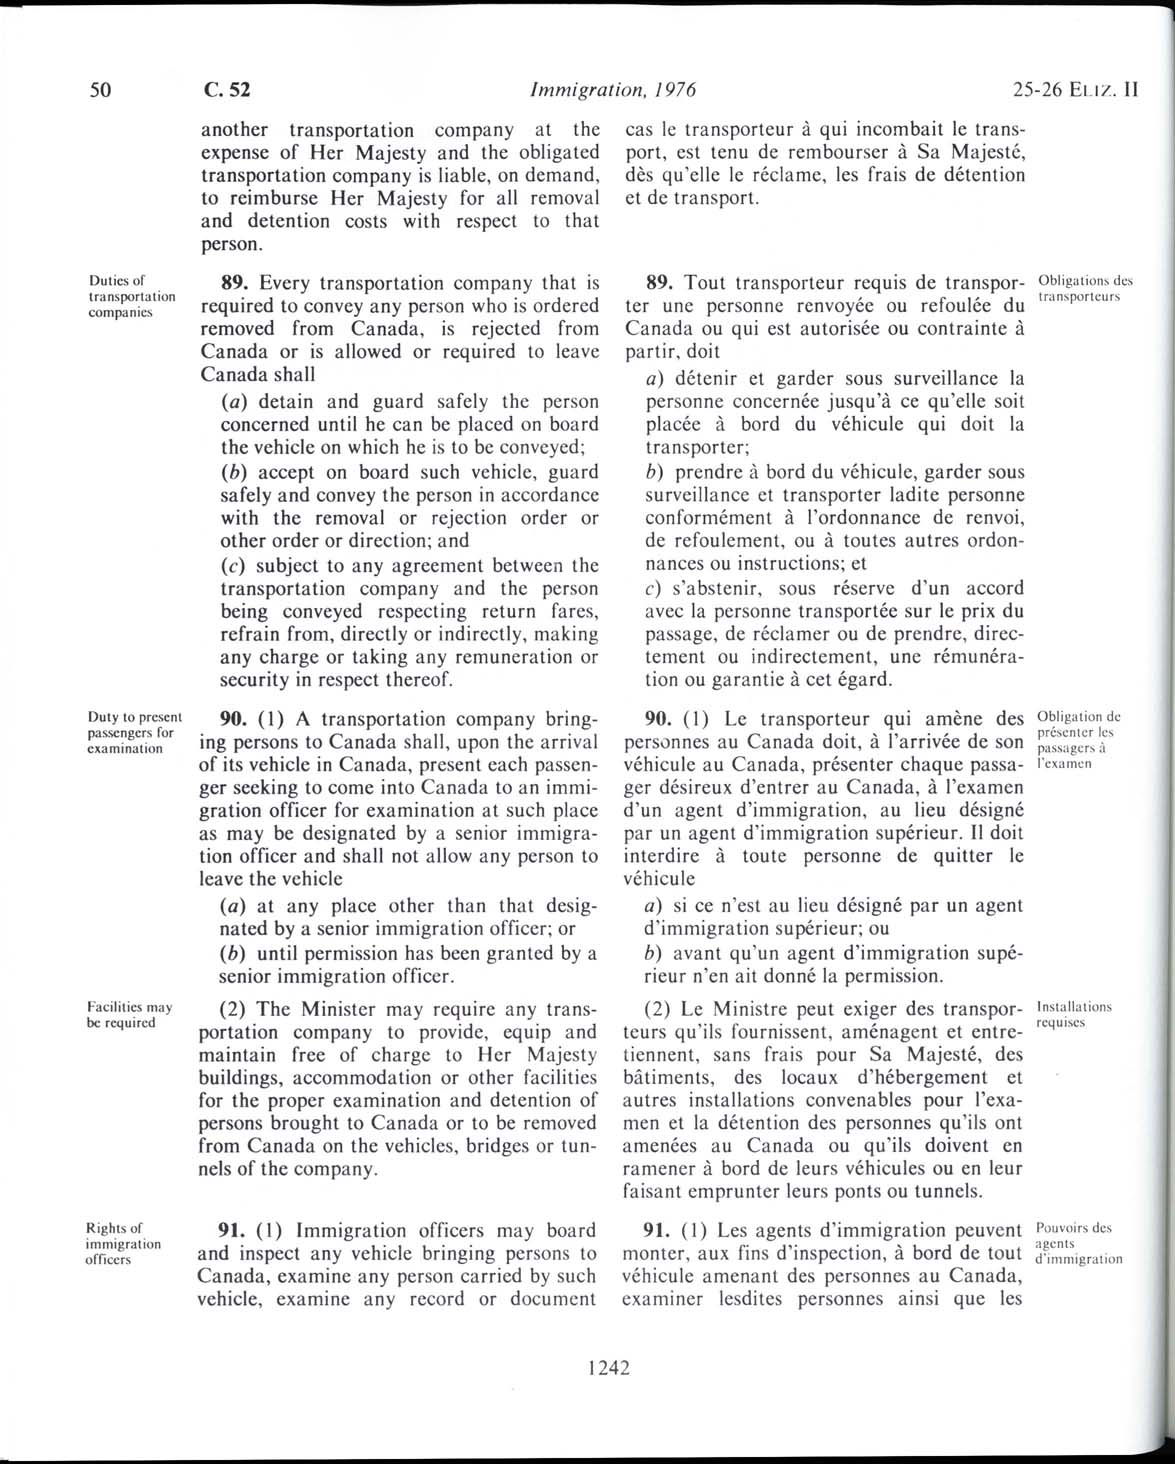 Page 1242 Loi sur l’immigration de 1976